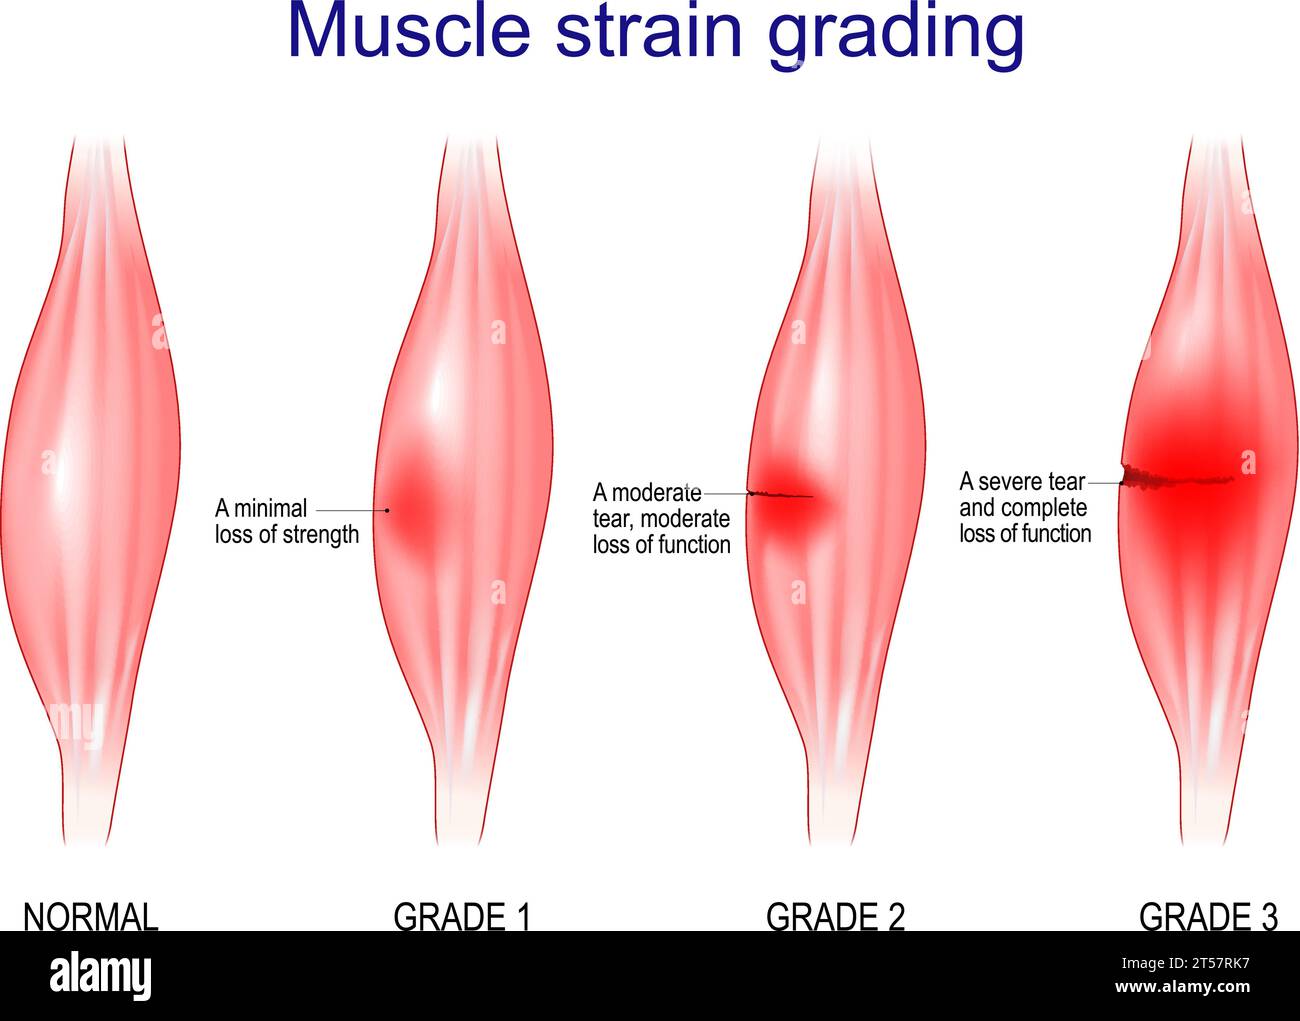 Classificazione della tensione muscolare. Il grado 1 è Una perdita di resistenza minima. Il grado 3 è una grave lacerazione e una completa perdita di funzionalità. Illustrazione vettoriale Illustrazione Vettoriale